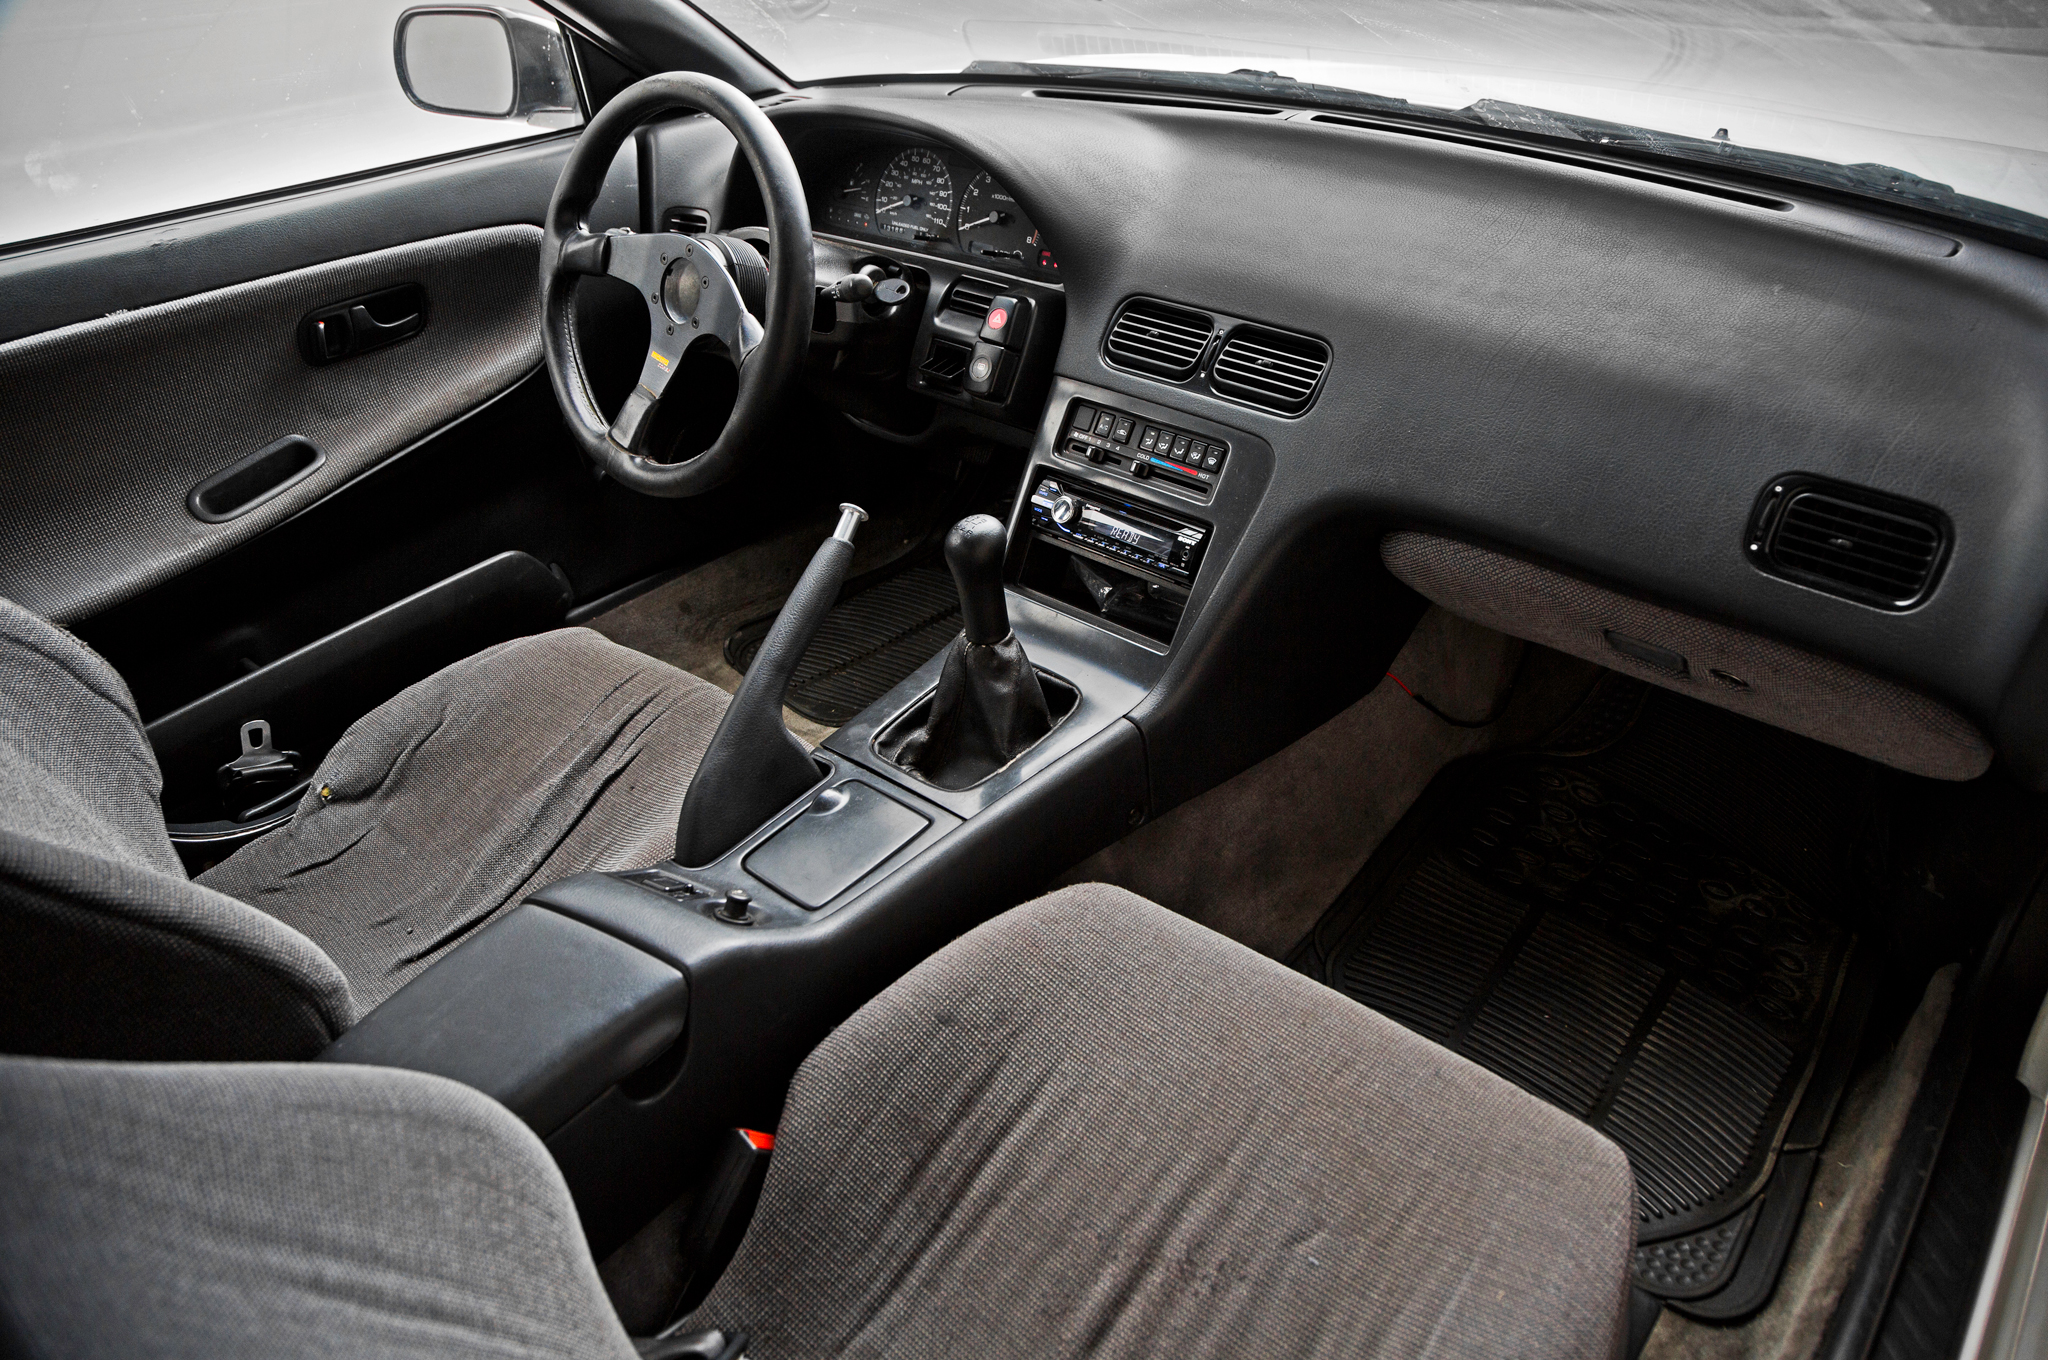 1993 Nissan Stanza Interior